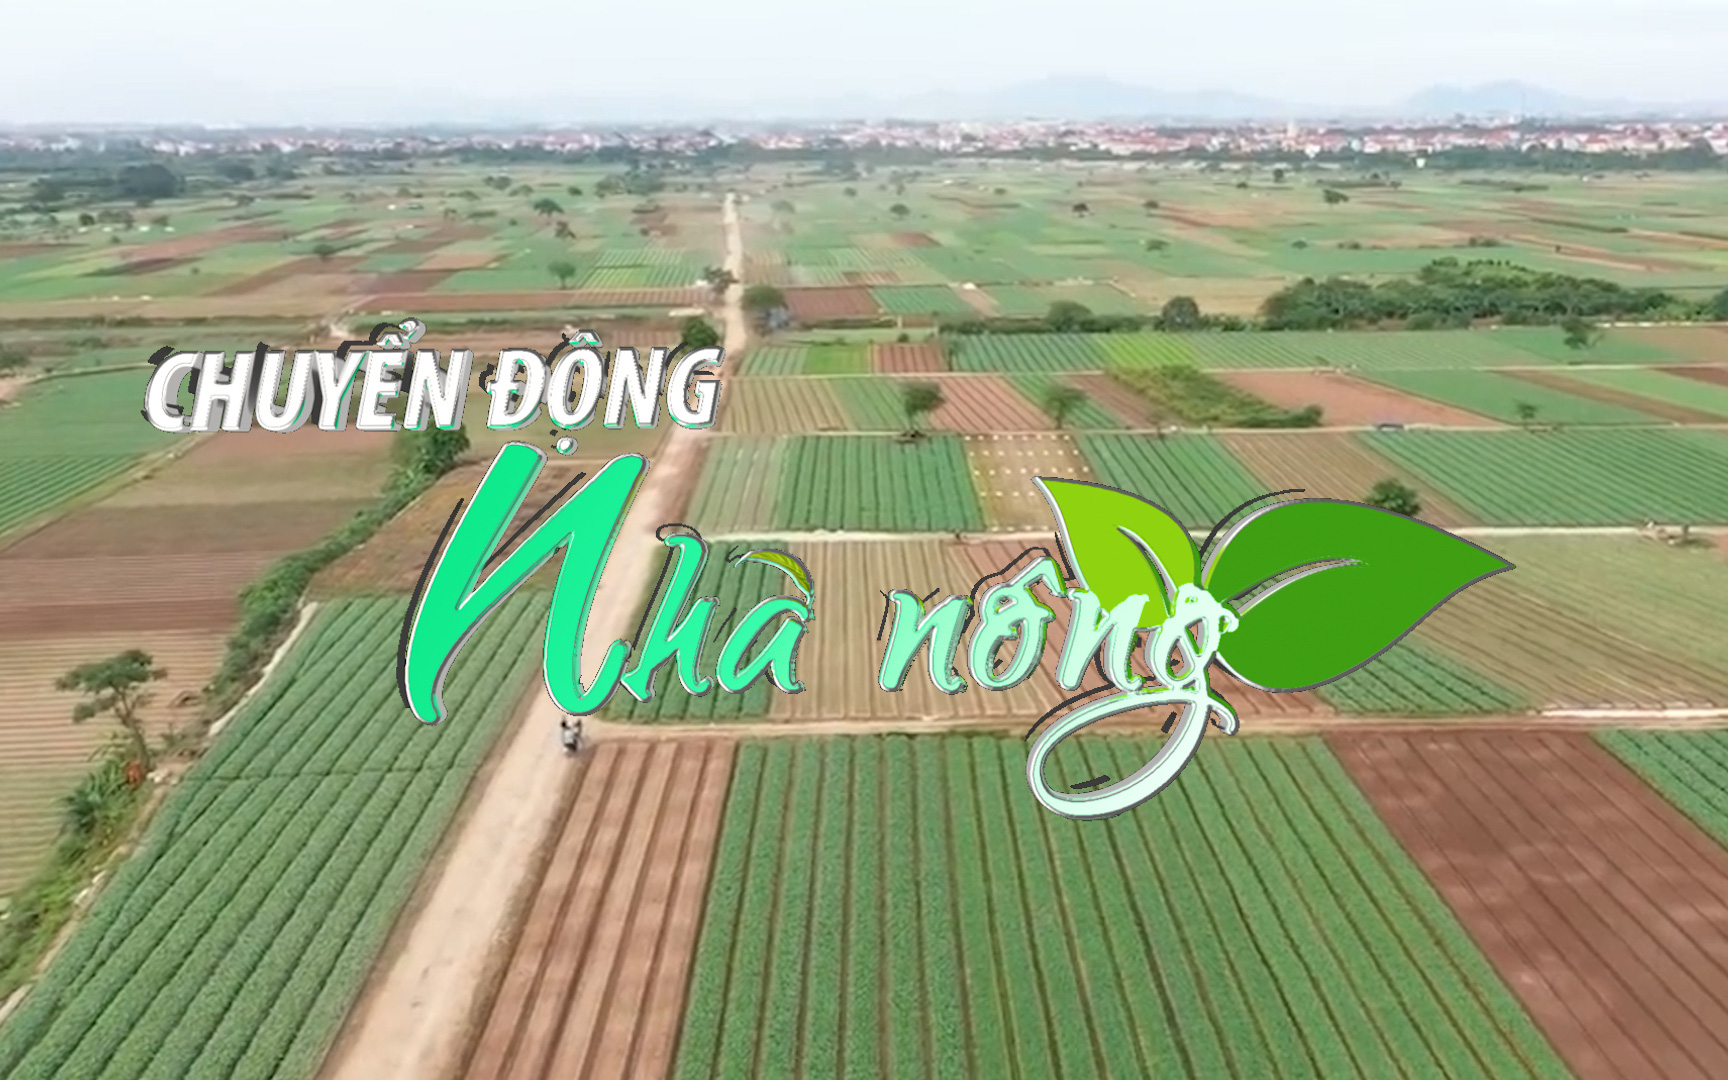 Chuyển động Nhà nông 13/2: Đưa nền nông nghiệp Việt Nam lên top đầu thế giới vào năm 2050